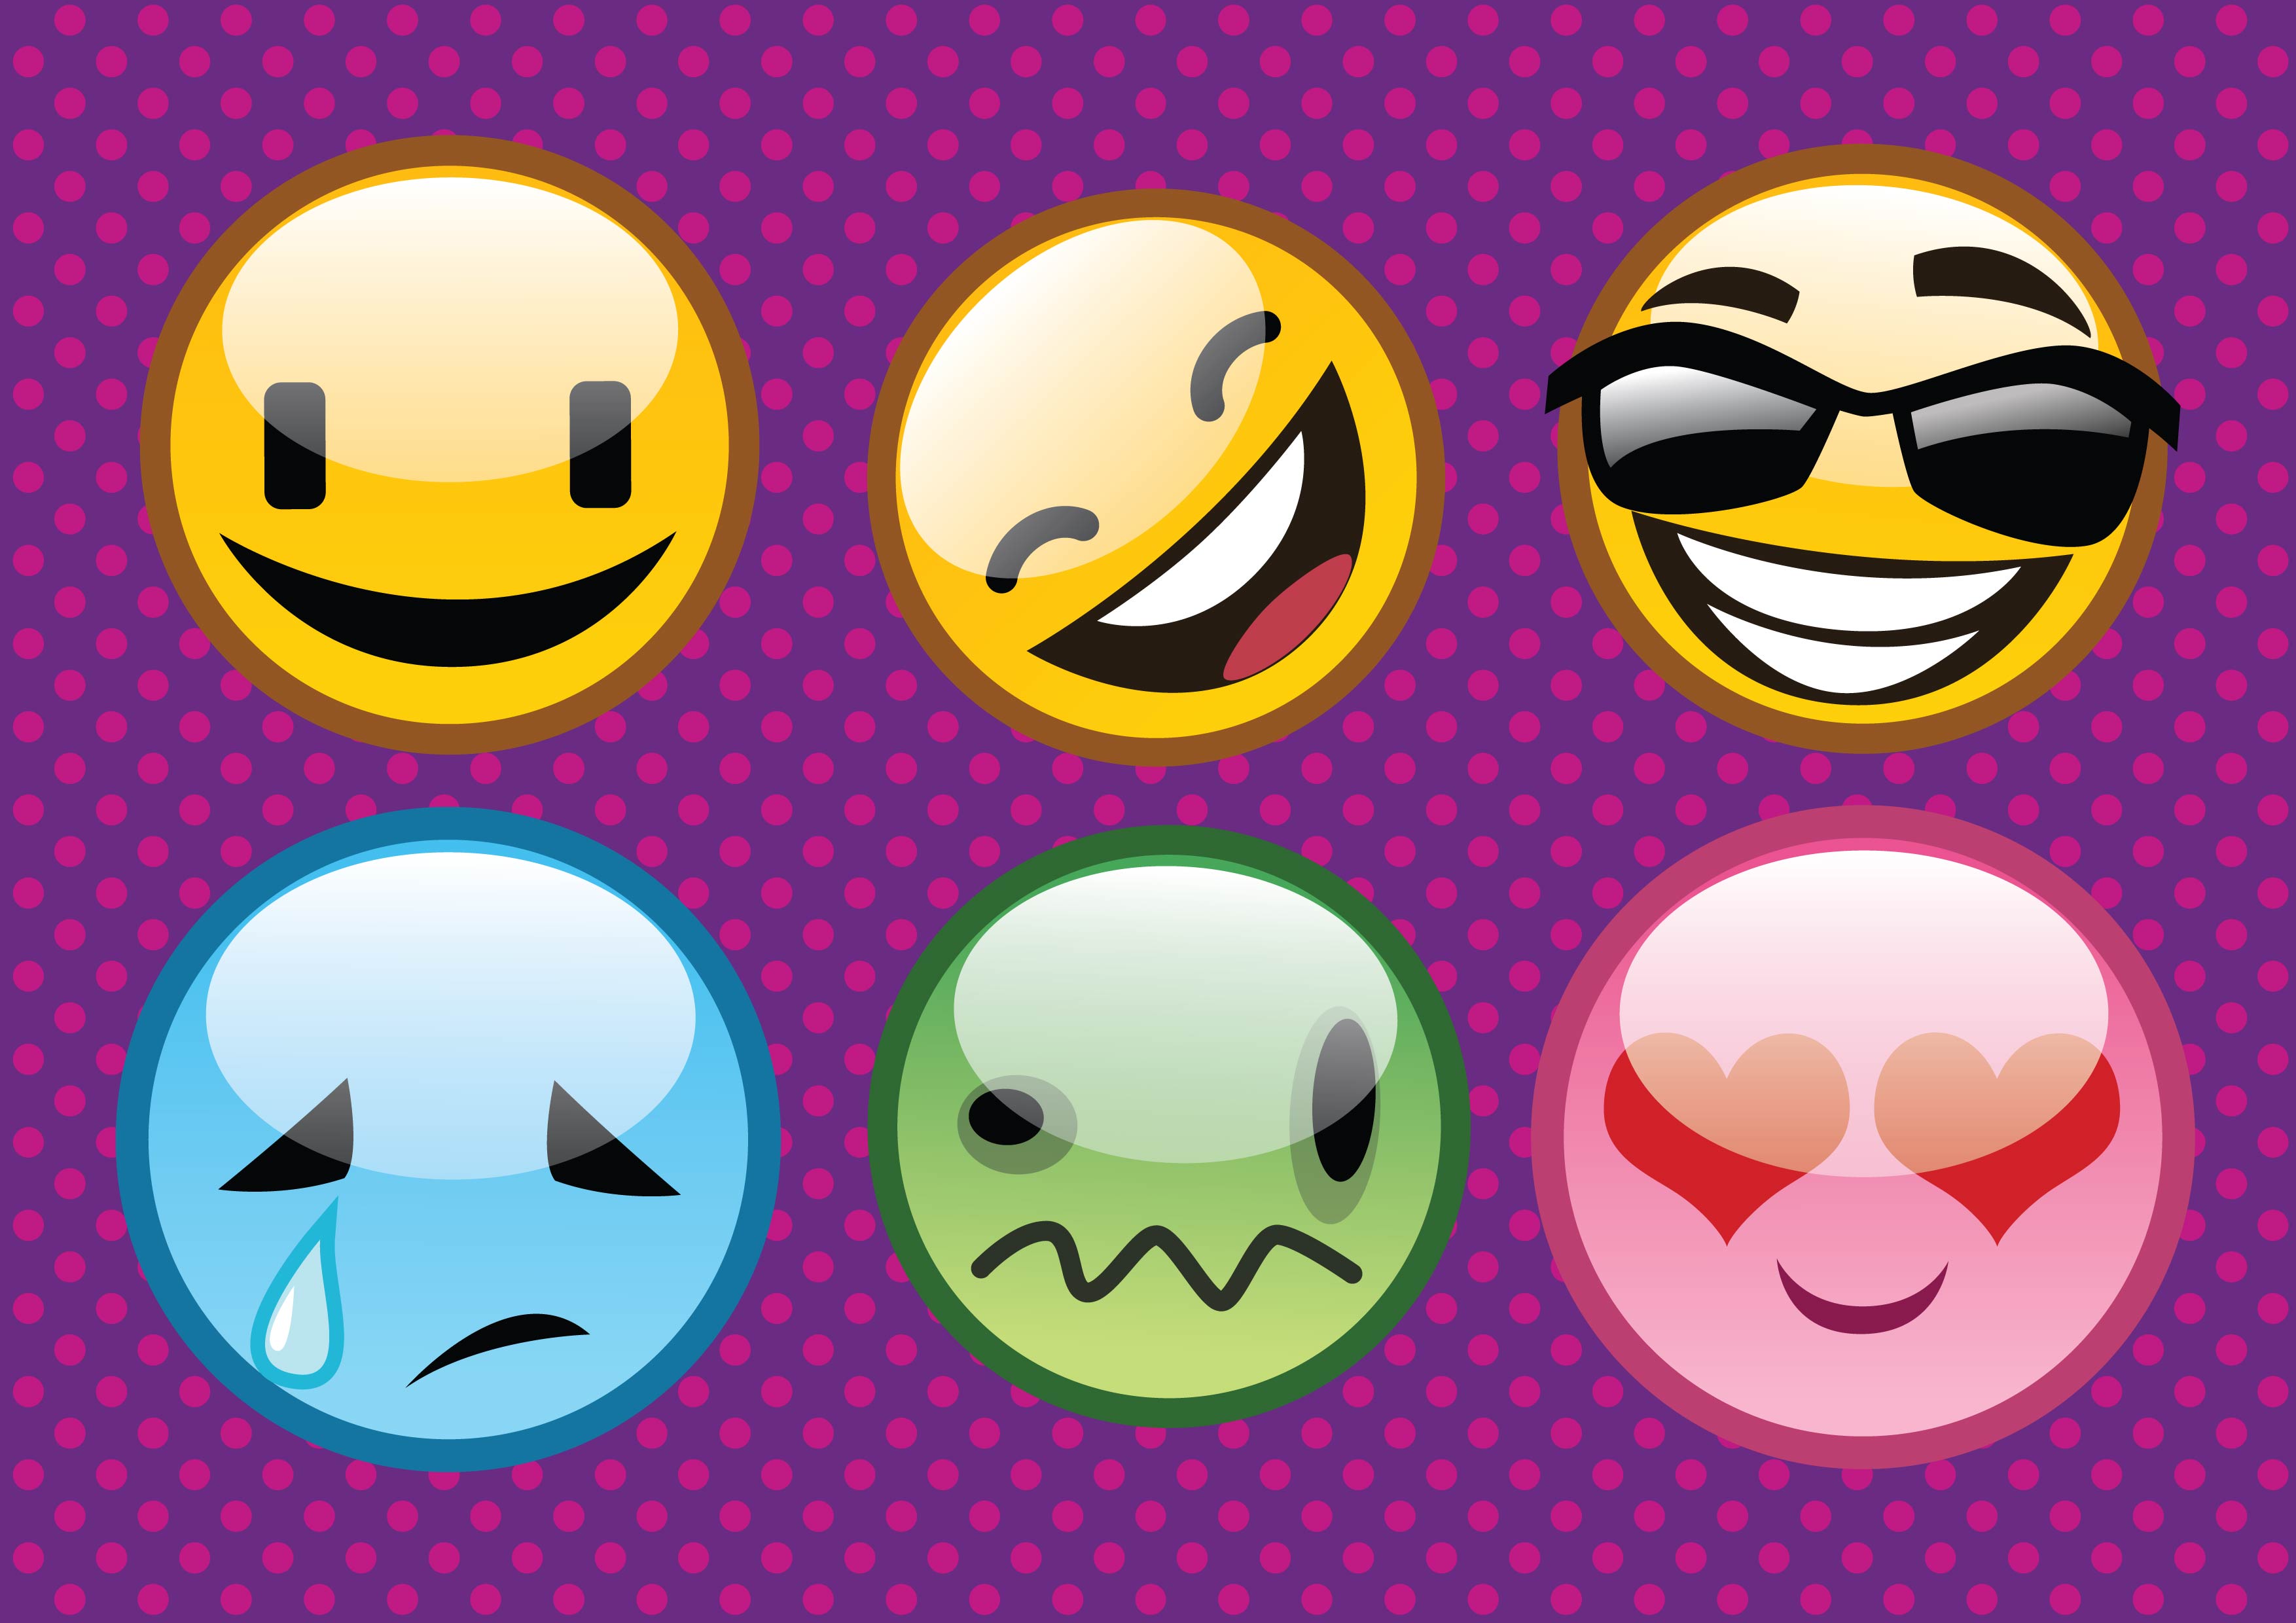 Smiley face symbols copy paste Smileys Symbols